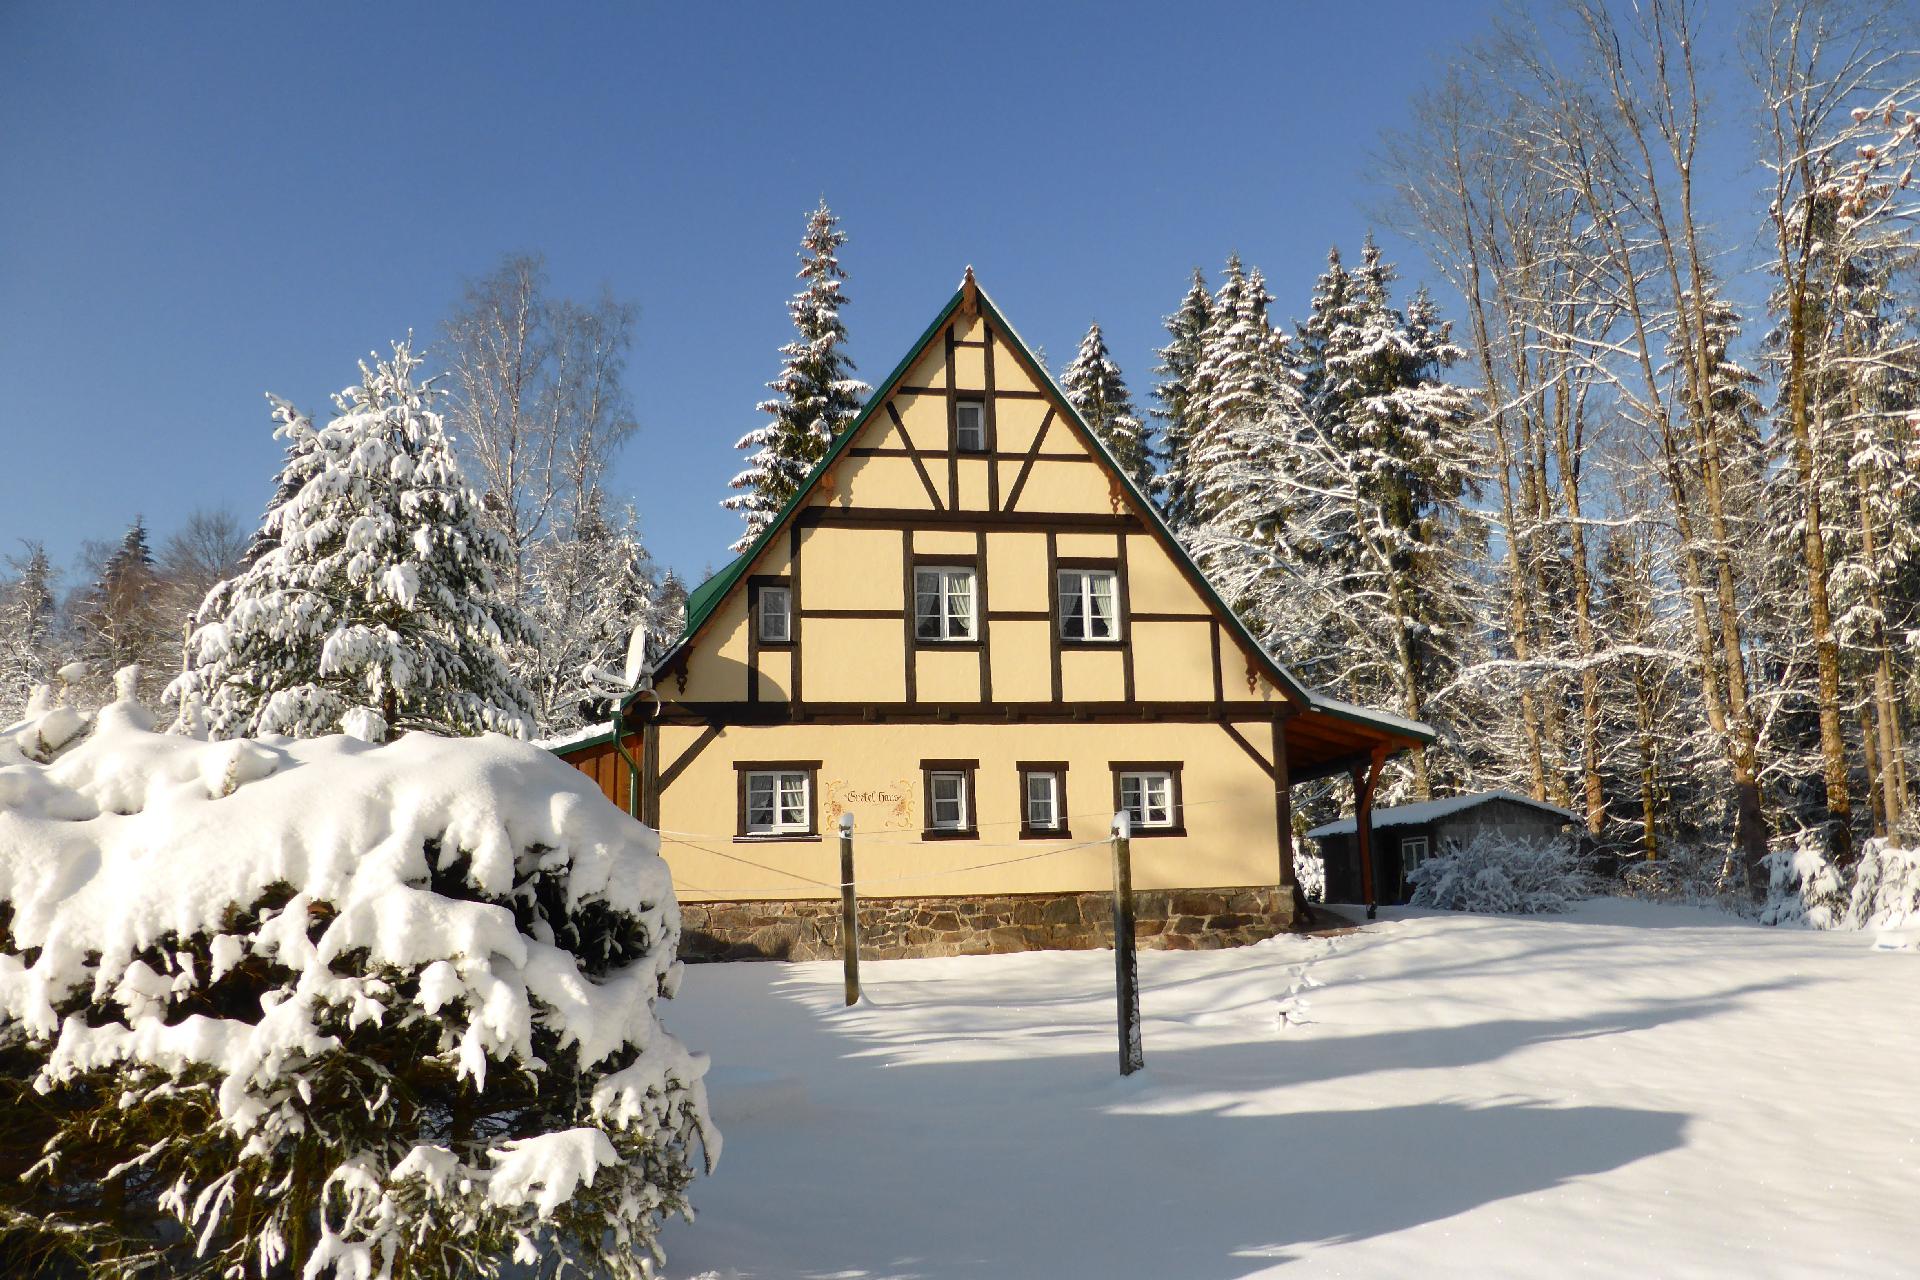 Ferienhaus in Grünheide mit Eigenem Garten  in Deutschland